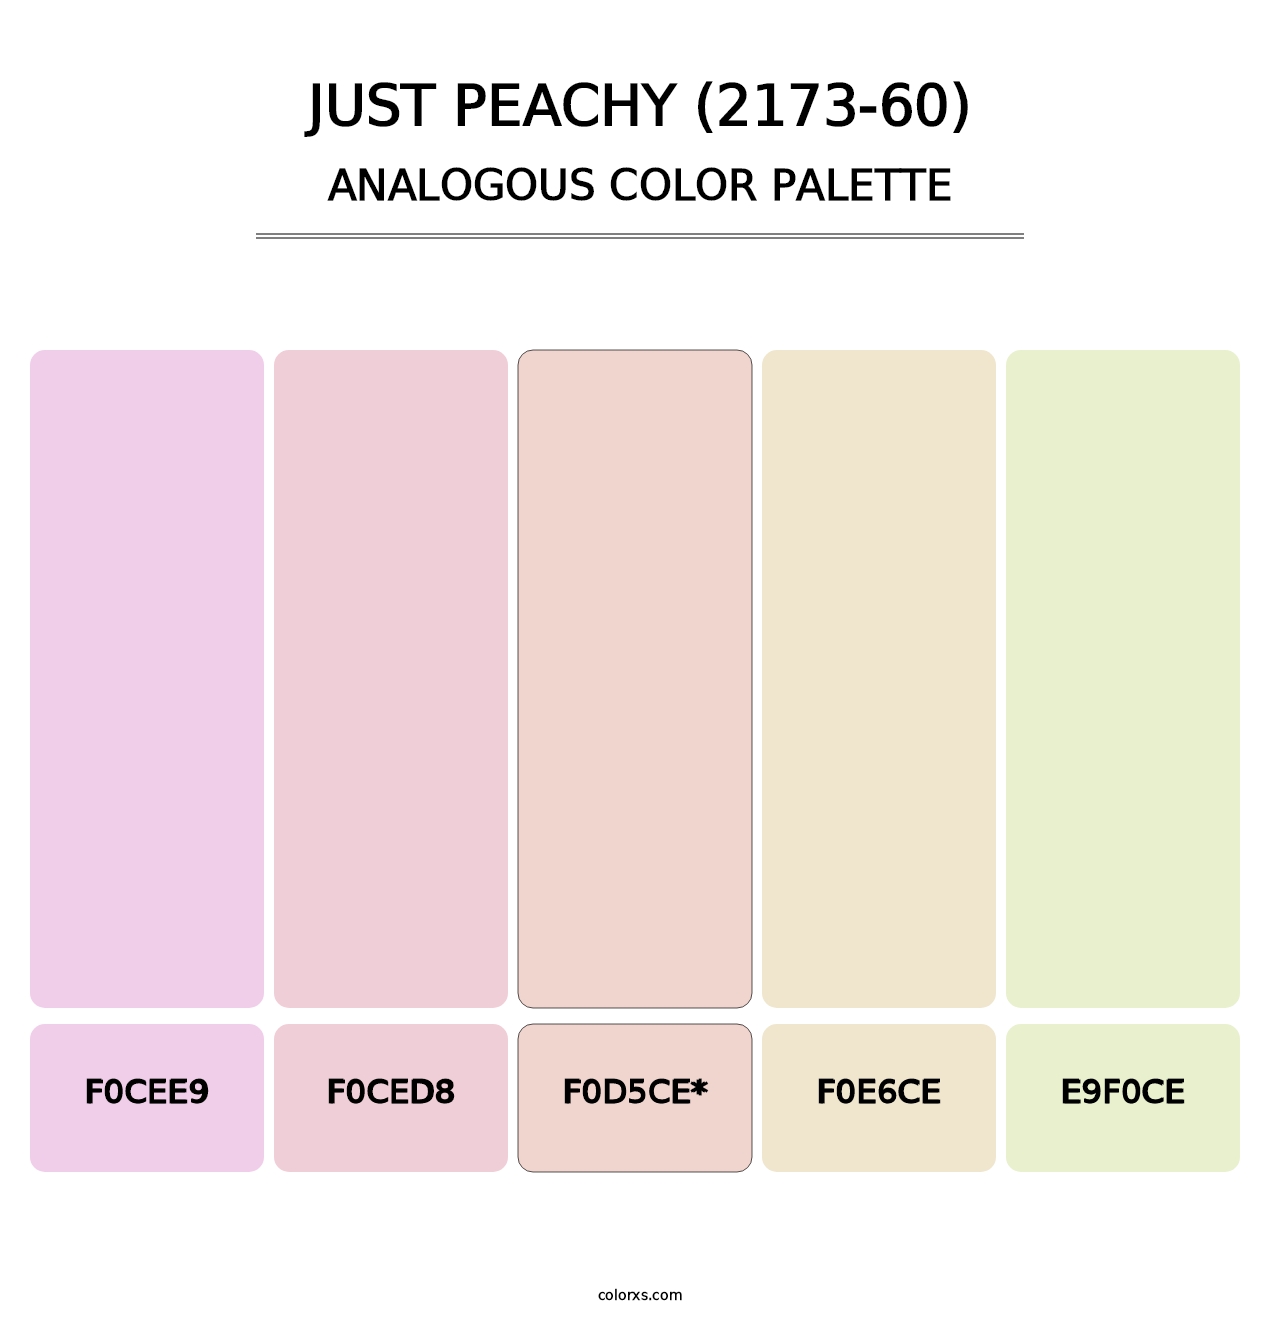 Just Peachy (2173-60) - Analogous Color Palette